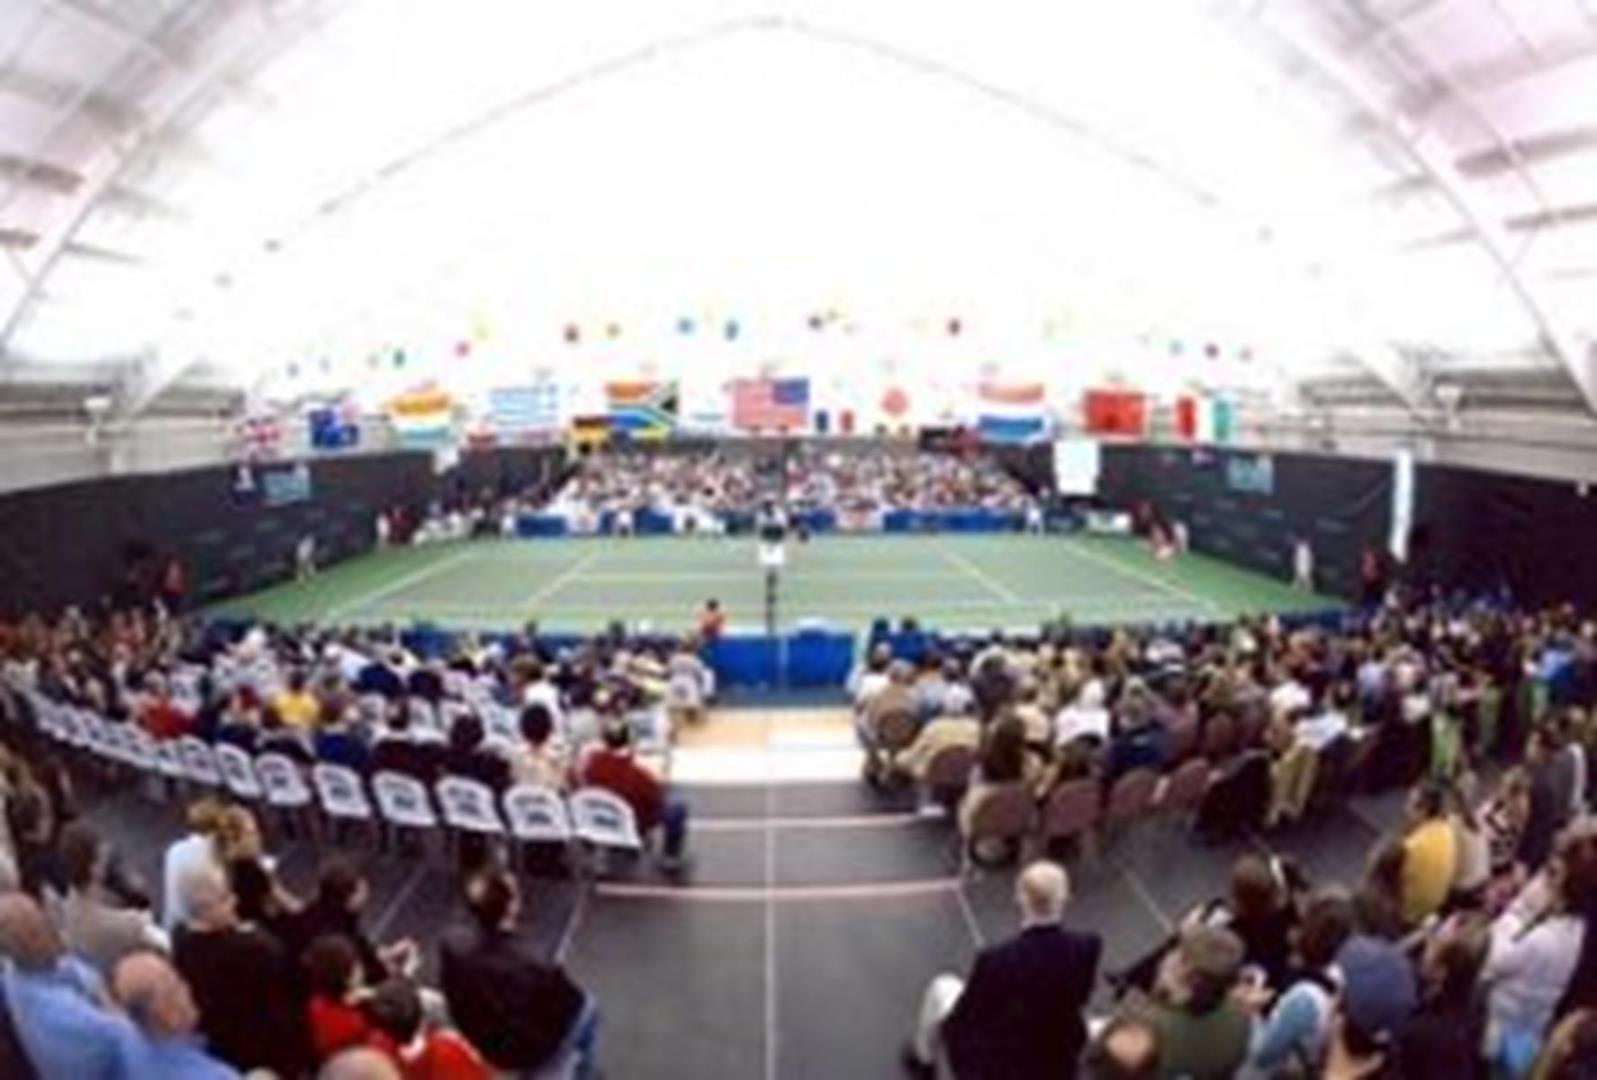 Tennis - Midland Tennis Center 4